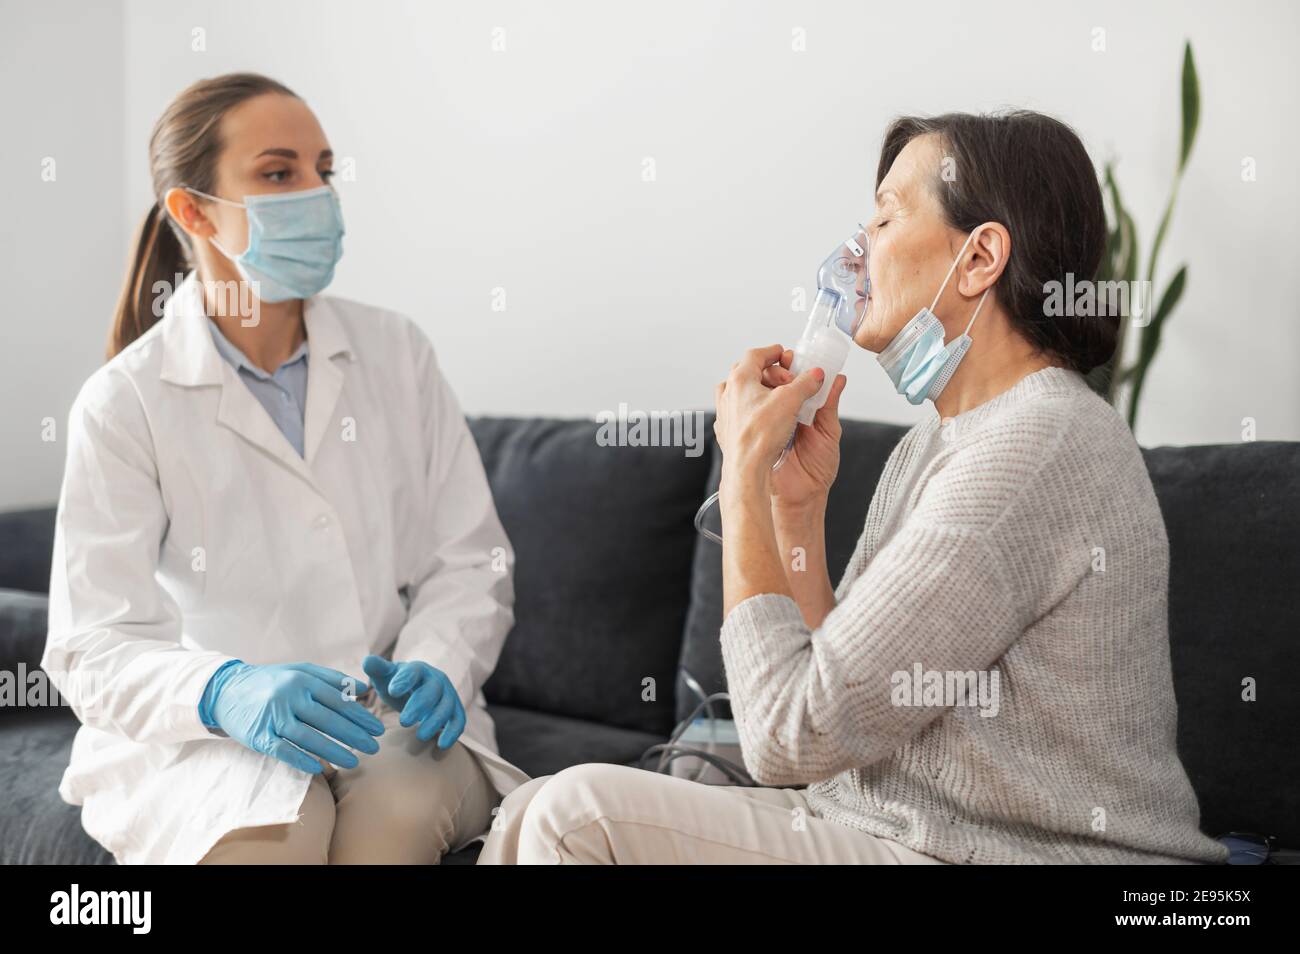 Une femme médecin, infirmière portant une blouse médicale et un masque  facial, met un masque à oxygène sur un patient sénior malade à la maison  pendant une pandémie. Soins de santé et